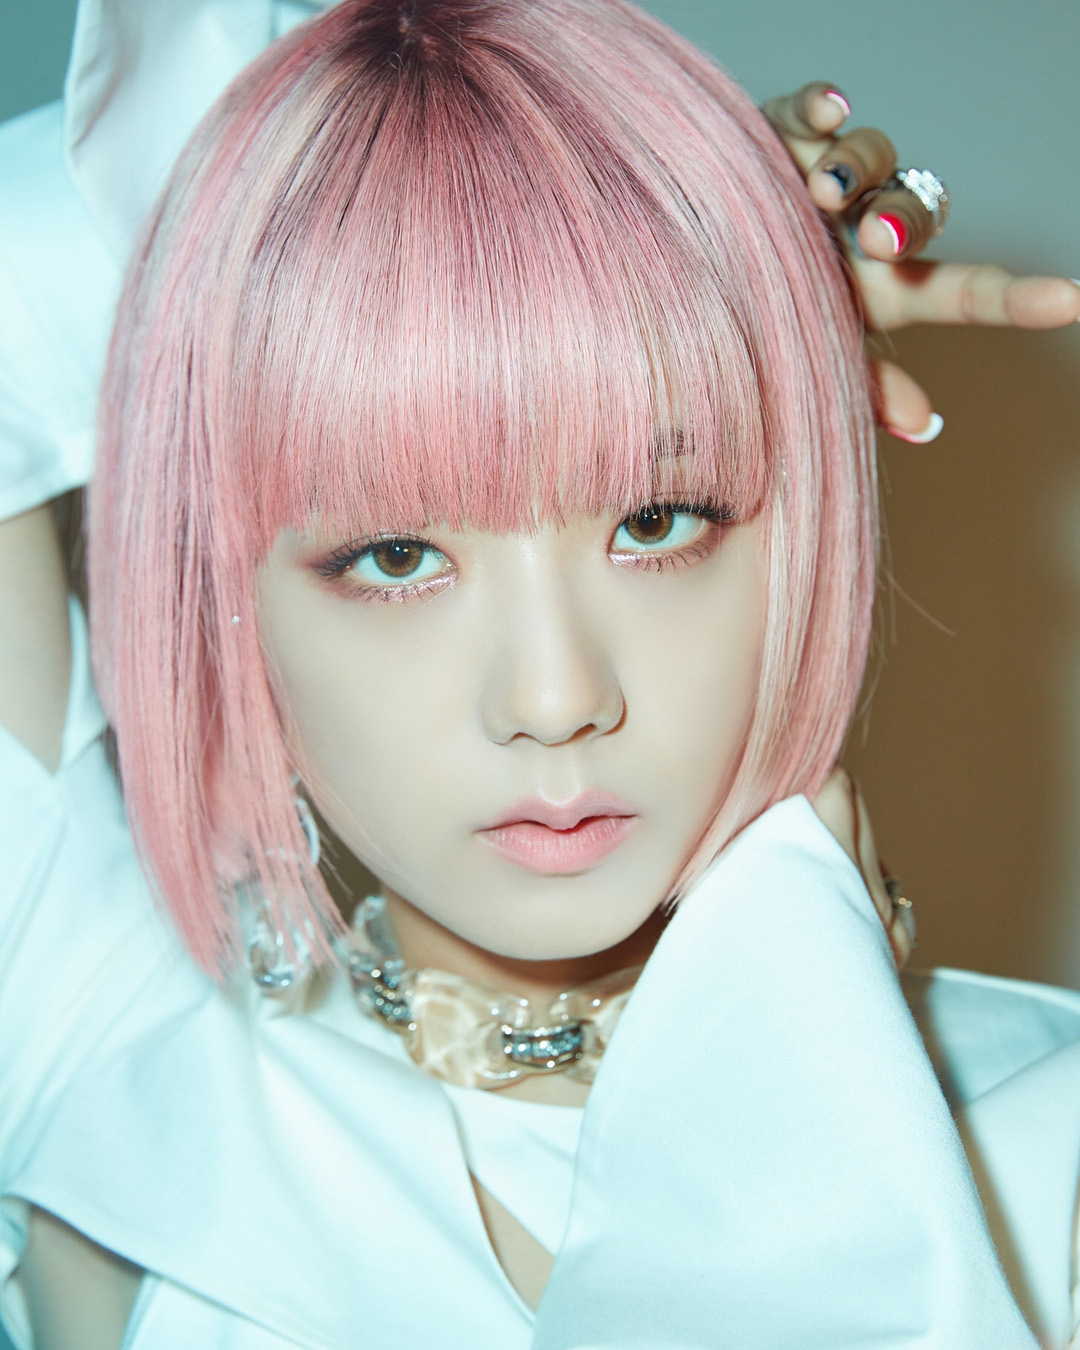 BLACKPINK Jisoo in pink hair color